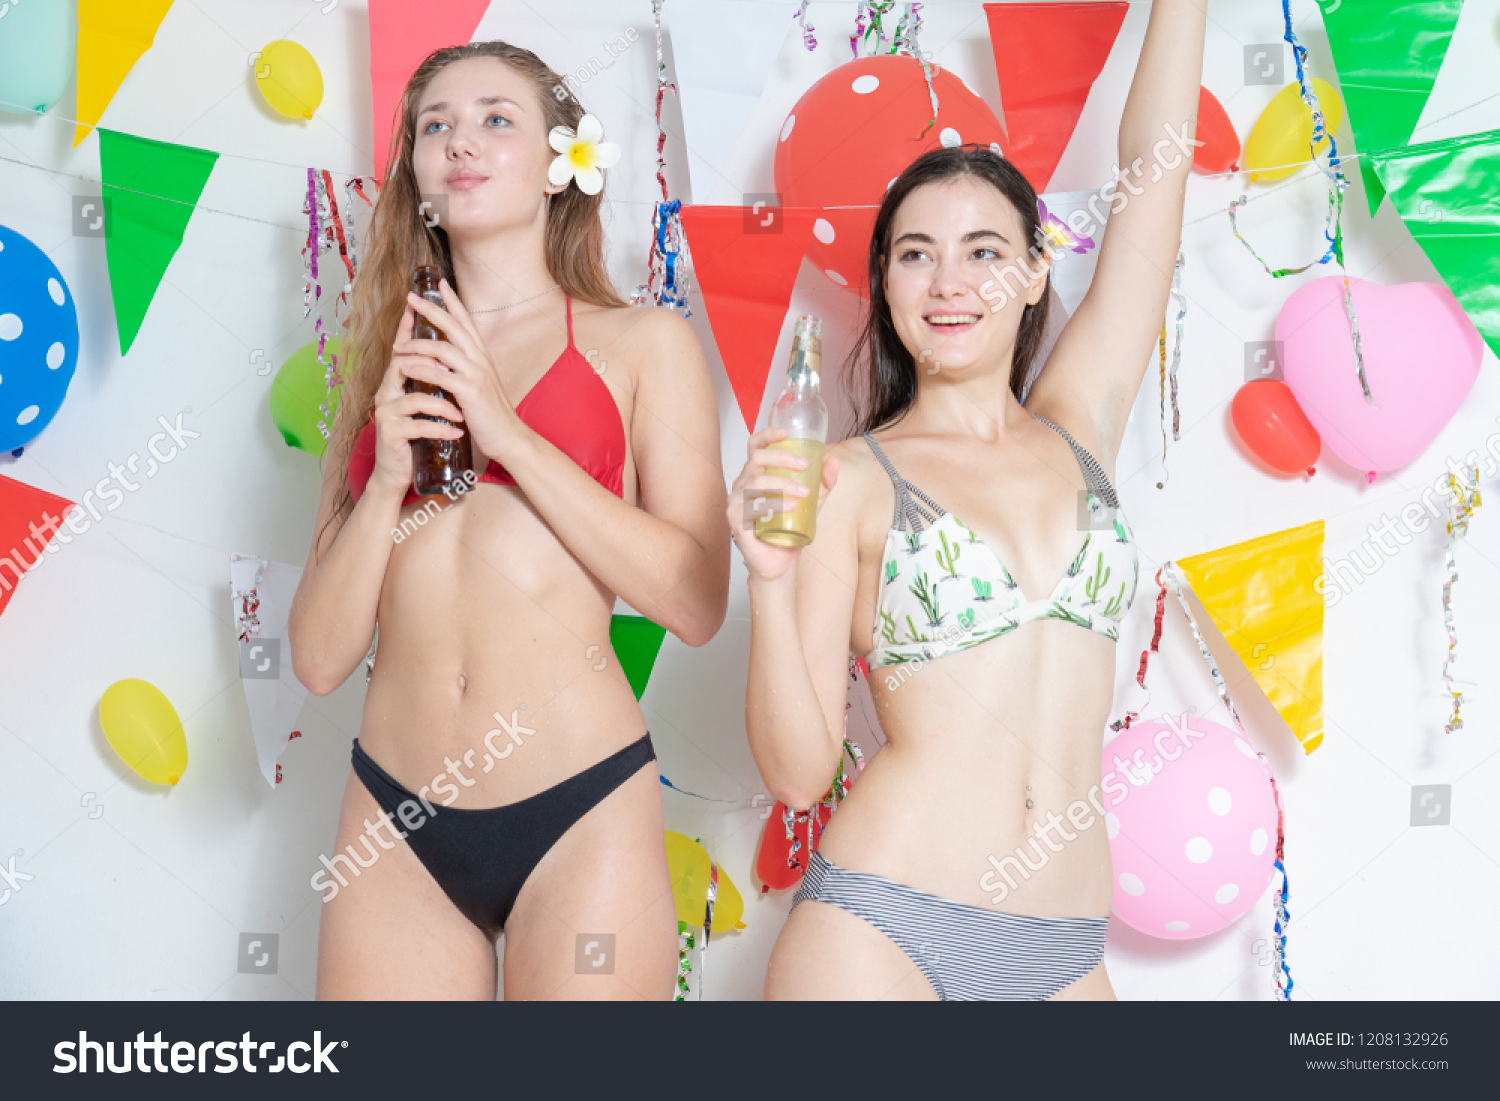 Best of Sexy girl dancing in bikini